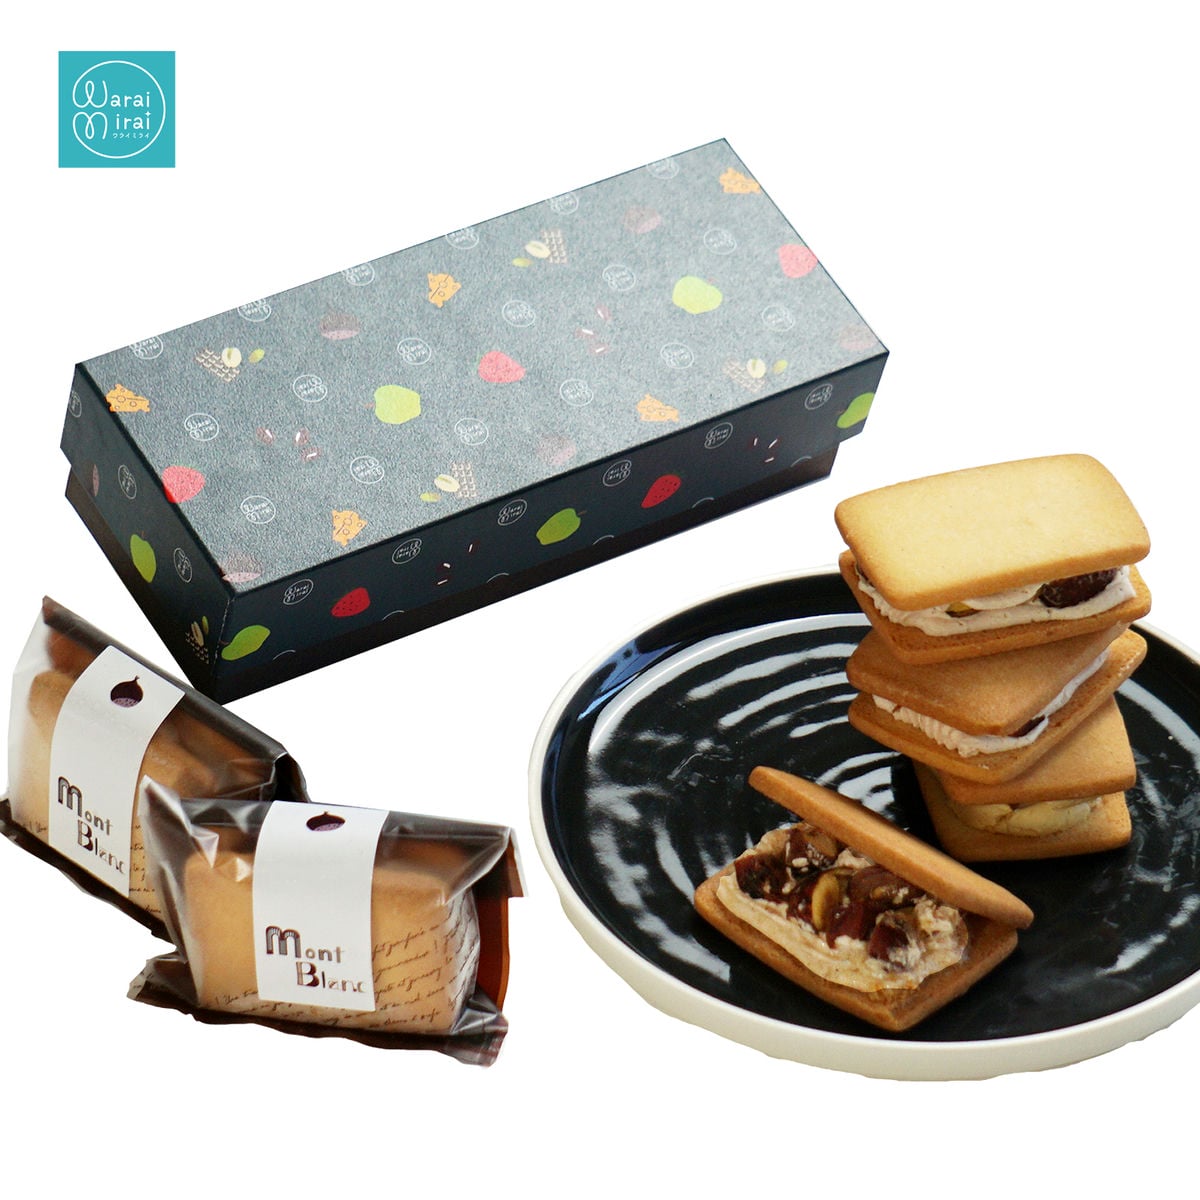 クッキー みたかの森サブレ&ギフトBOX - 菓子